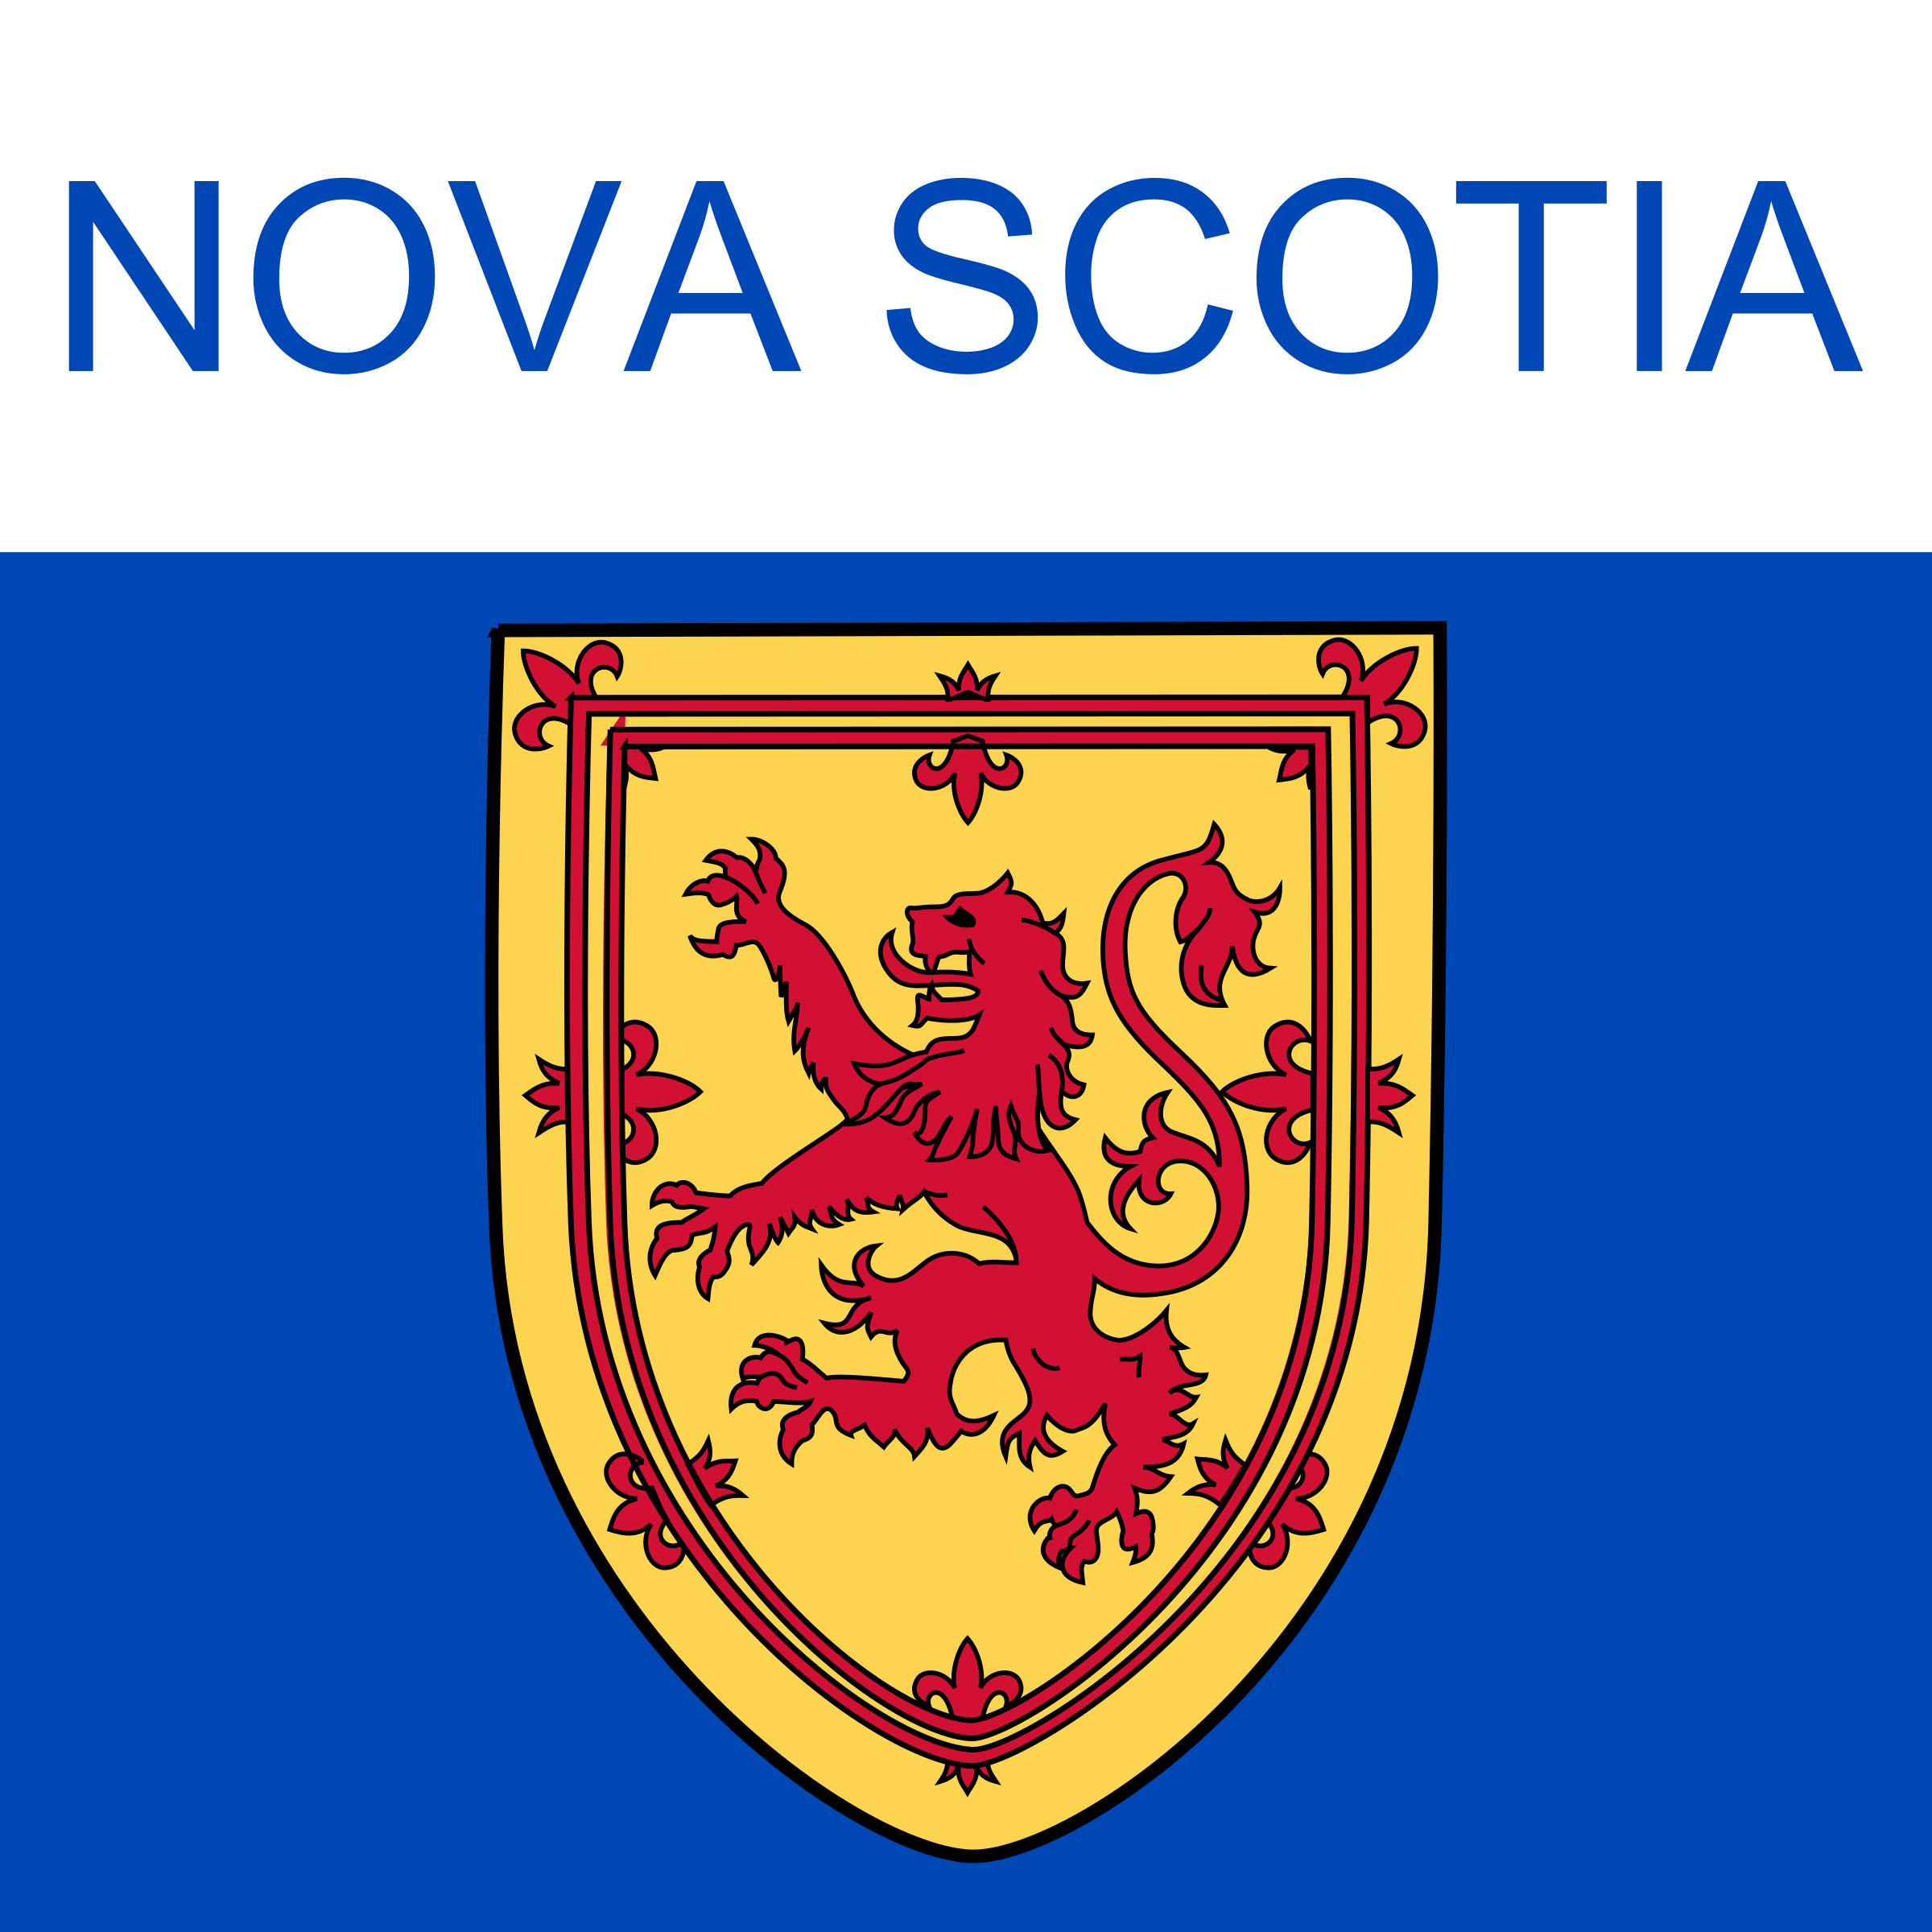 Nova Scotia clipart #3, Download drawings